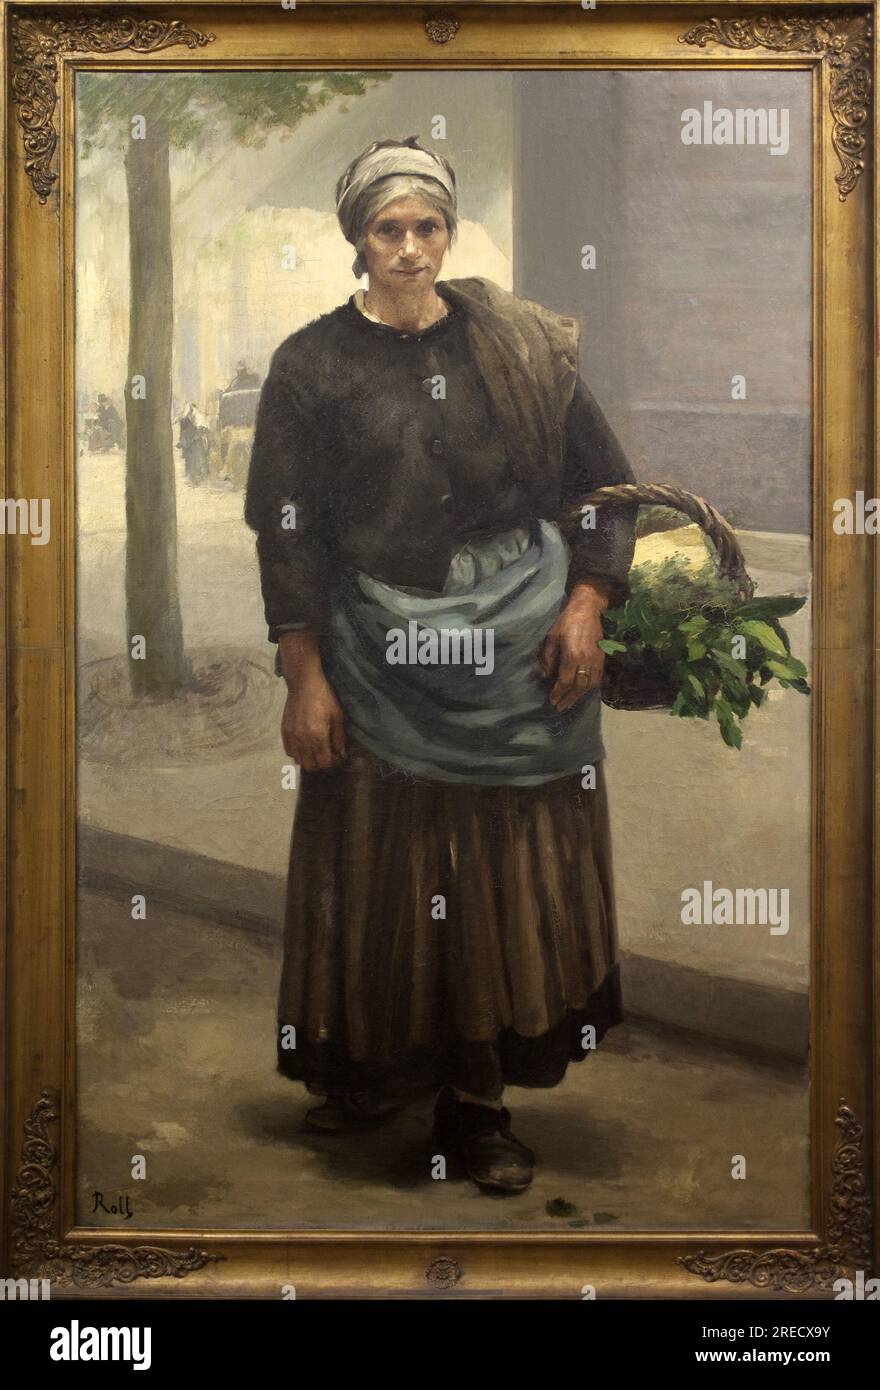 Marianne Offrey, crieuse de vert. Peinture de Alfred Roll (1846-1919), huile sur toile, avant 1885. Musee des Beaux Arts de Pau. Stock Photo